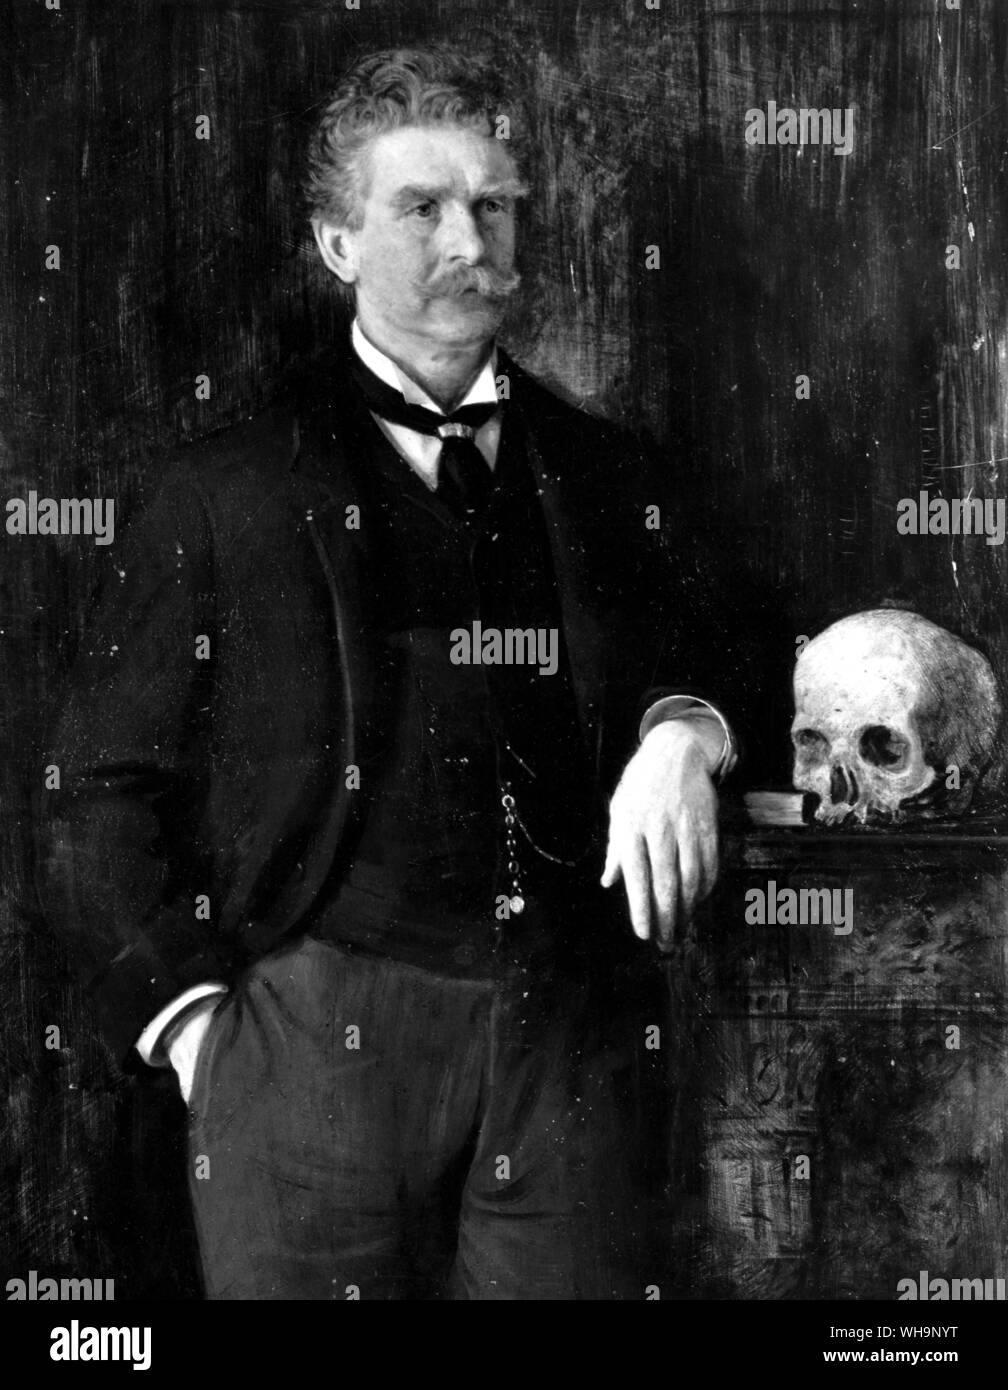 Ambrose Bierce, jurnalist, autore e celebrità di San Francisco frontiera letteraria, di J. H. E. Parkington - Foto di Mark Twain e della biografia Foto Stock